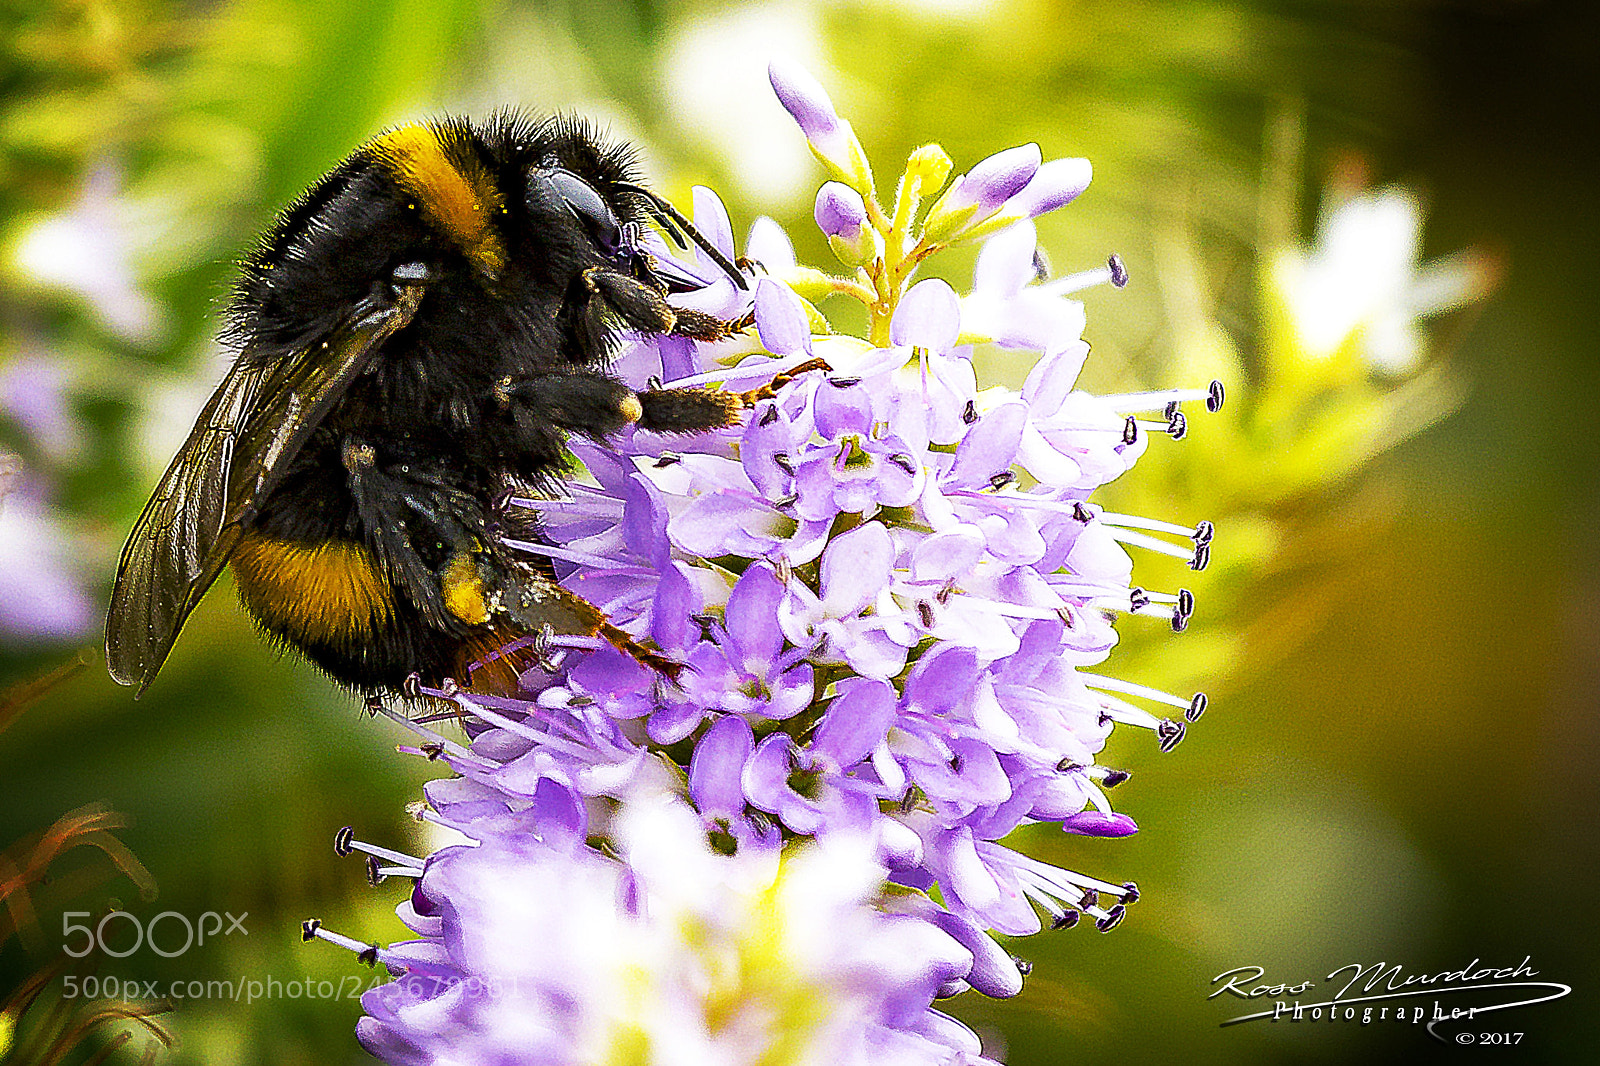 Canon EOS 60D sample photo. Macro bumble bee photography